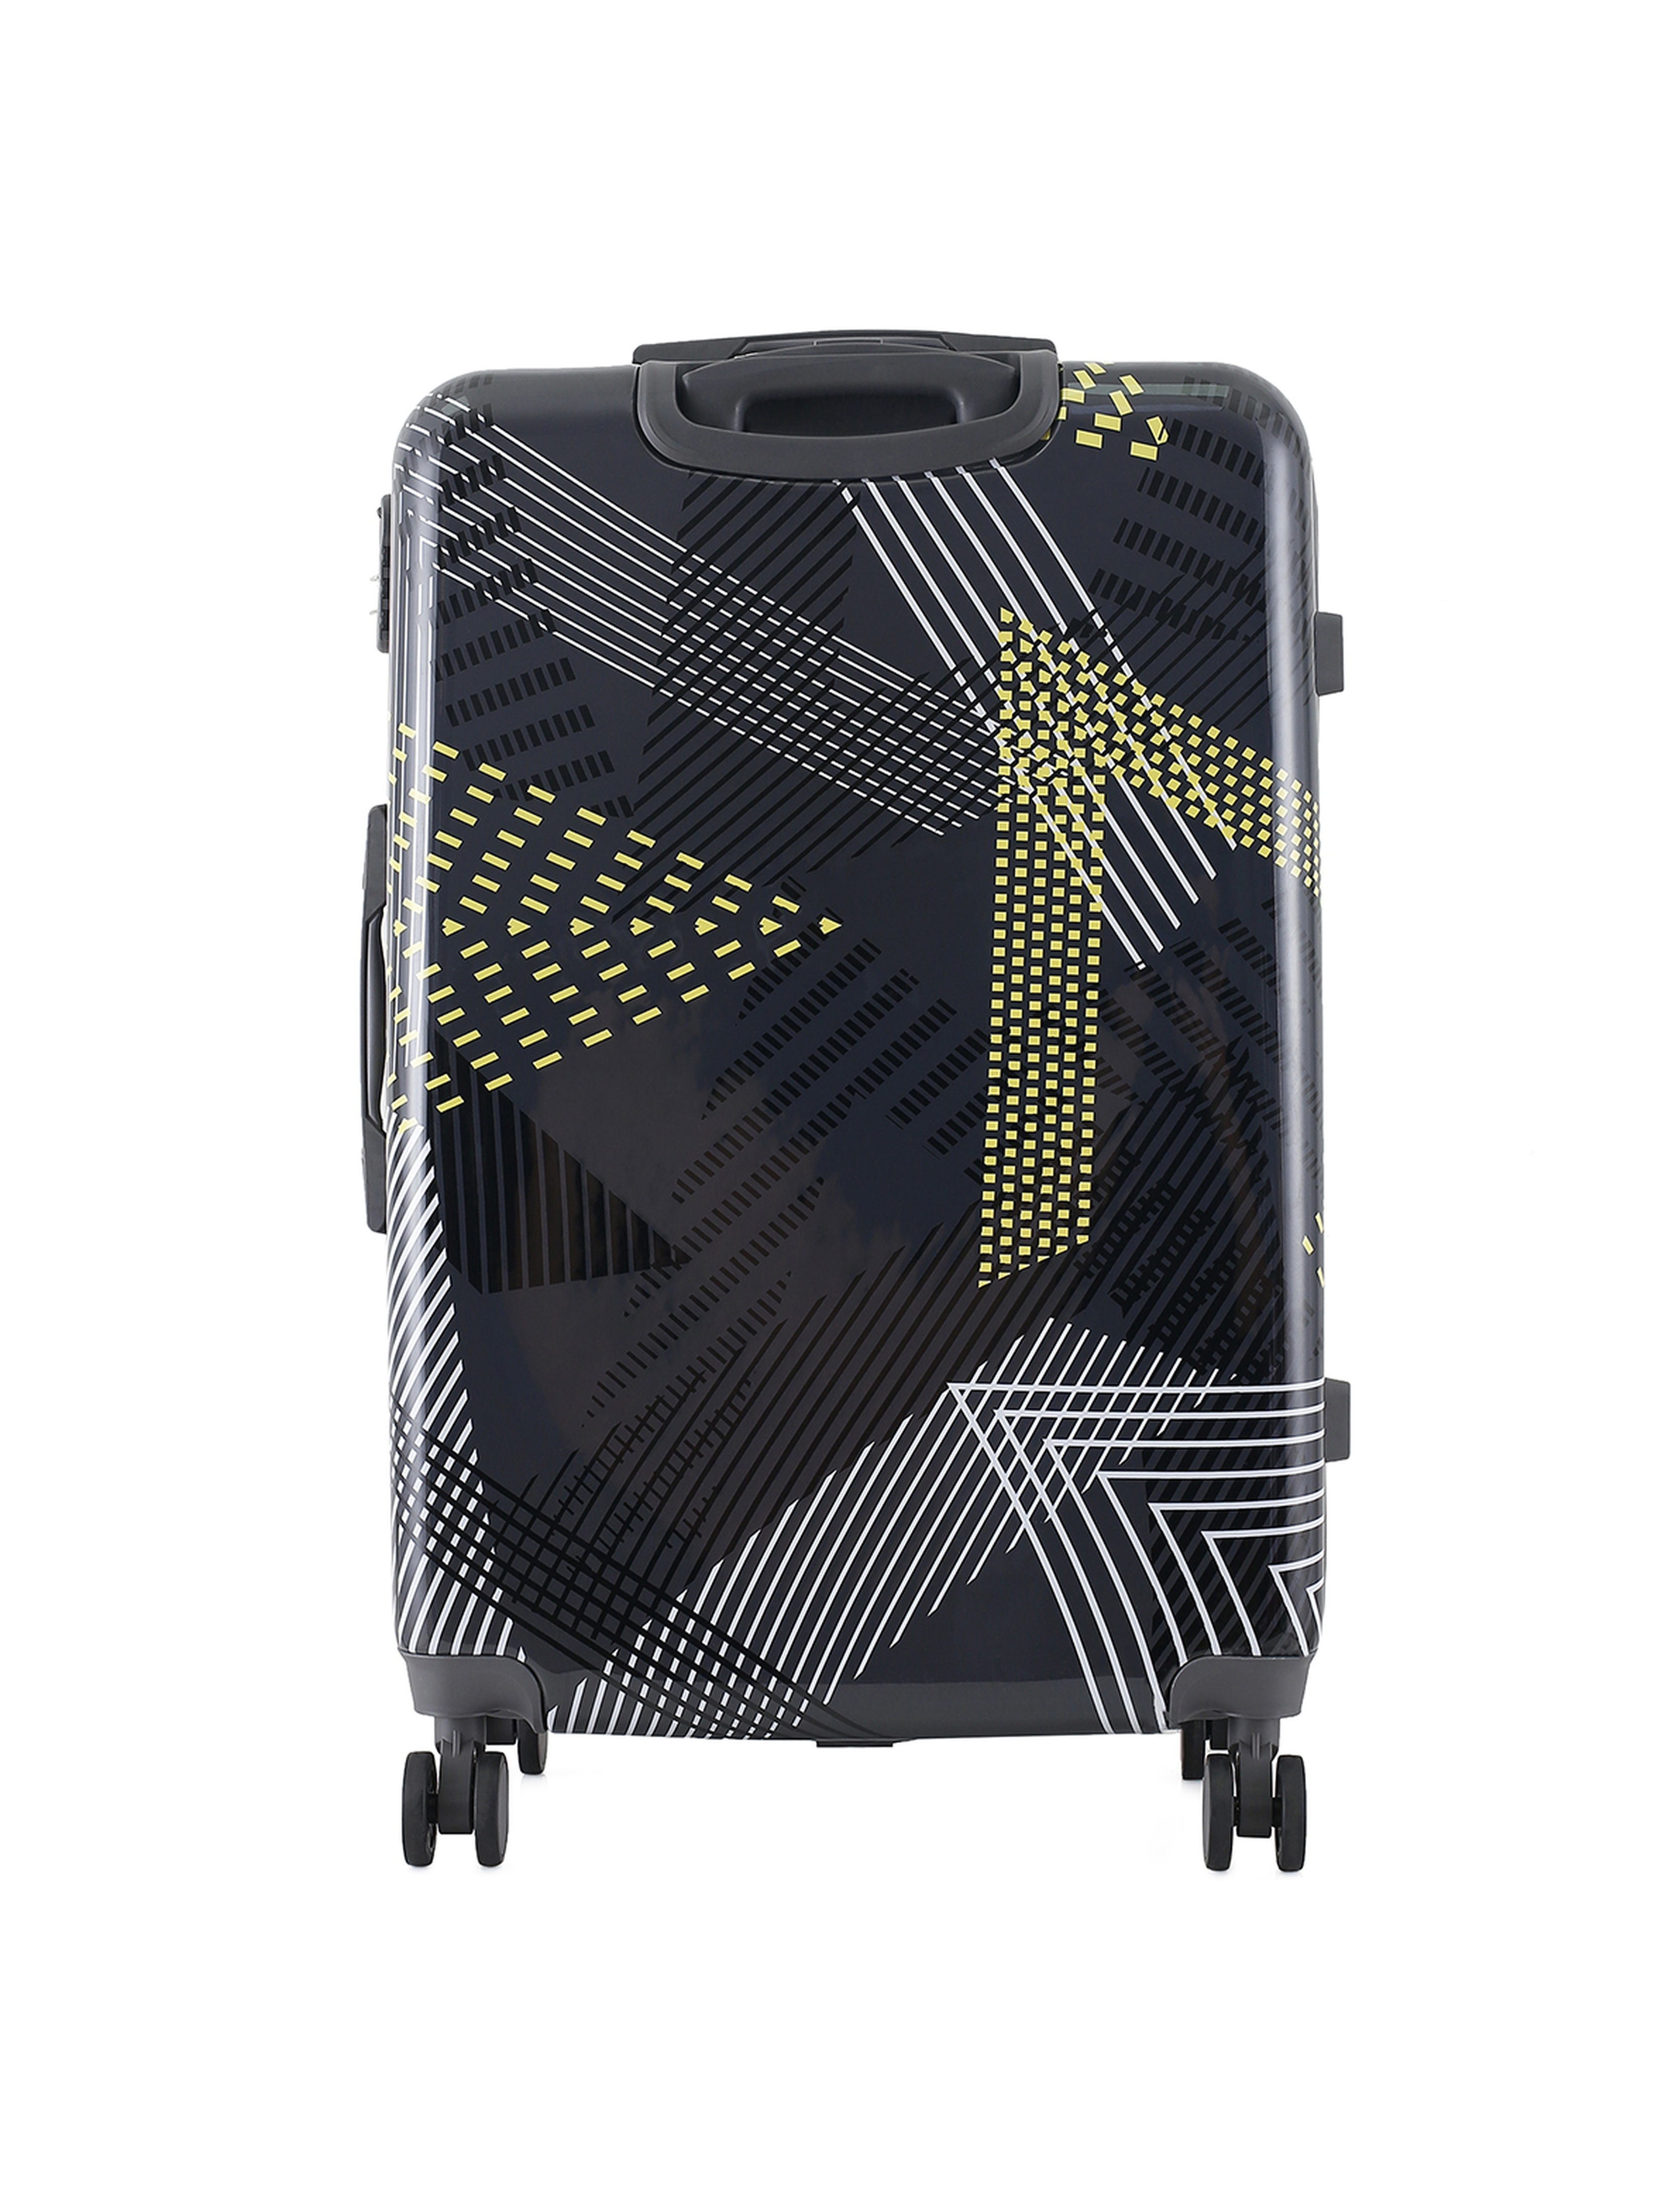 Duża twarda walizka 97 L - 50x29x76cm PC+ABS